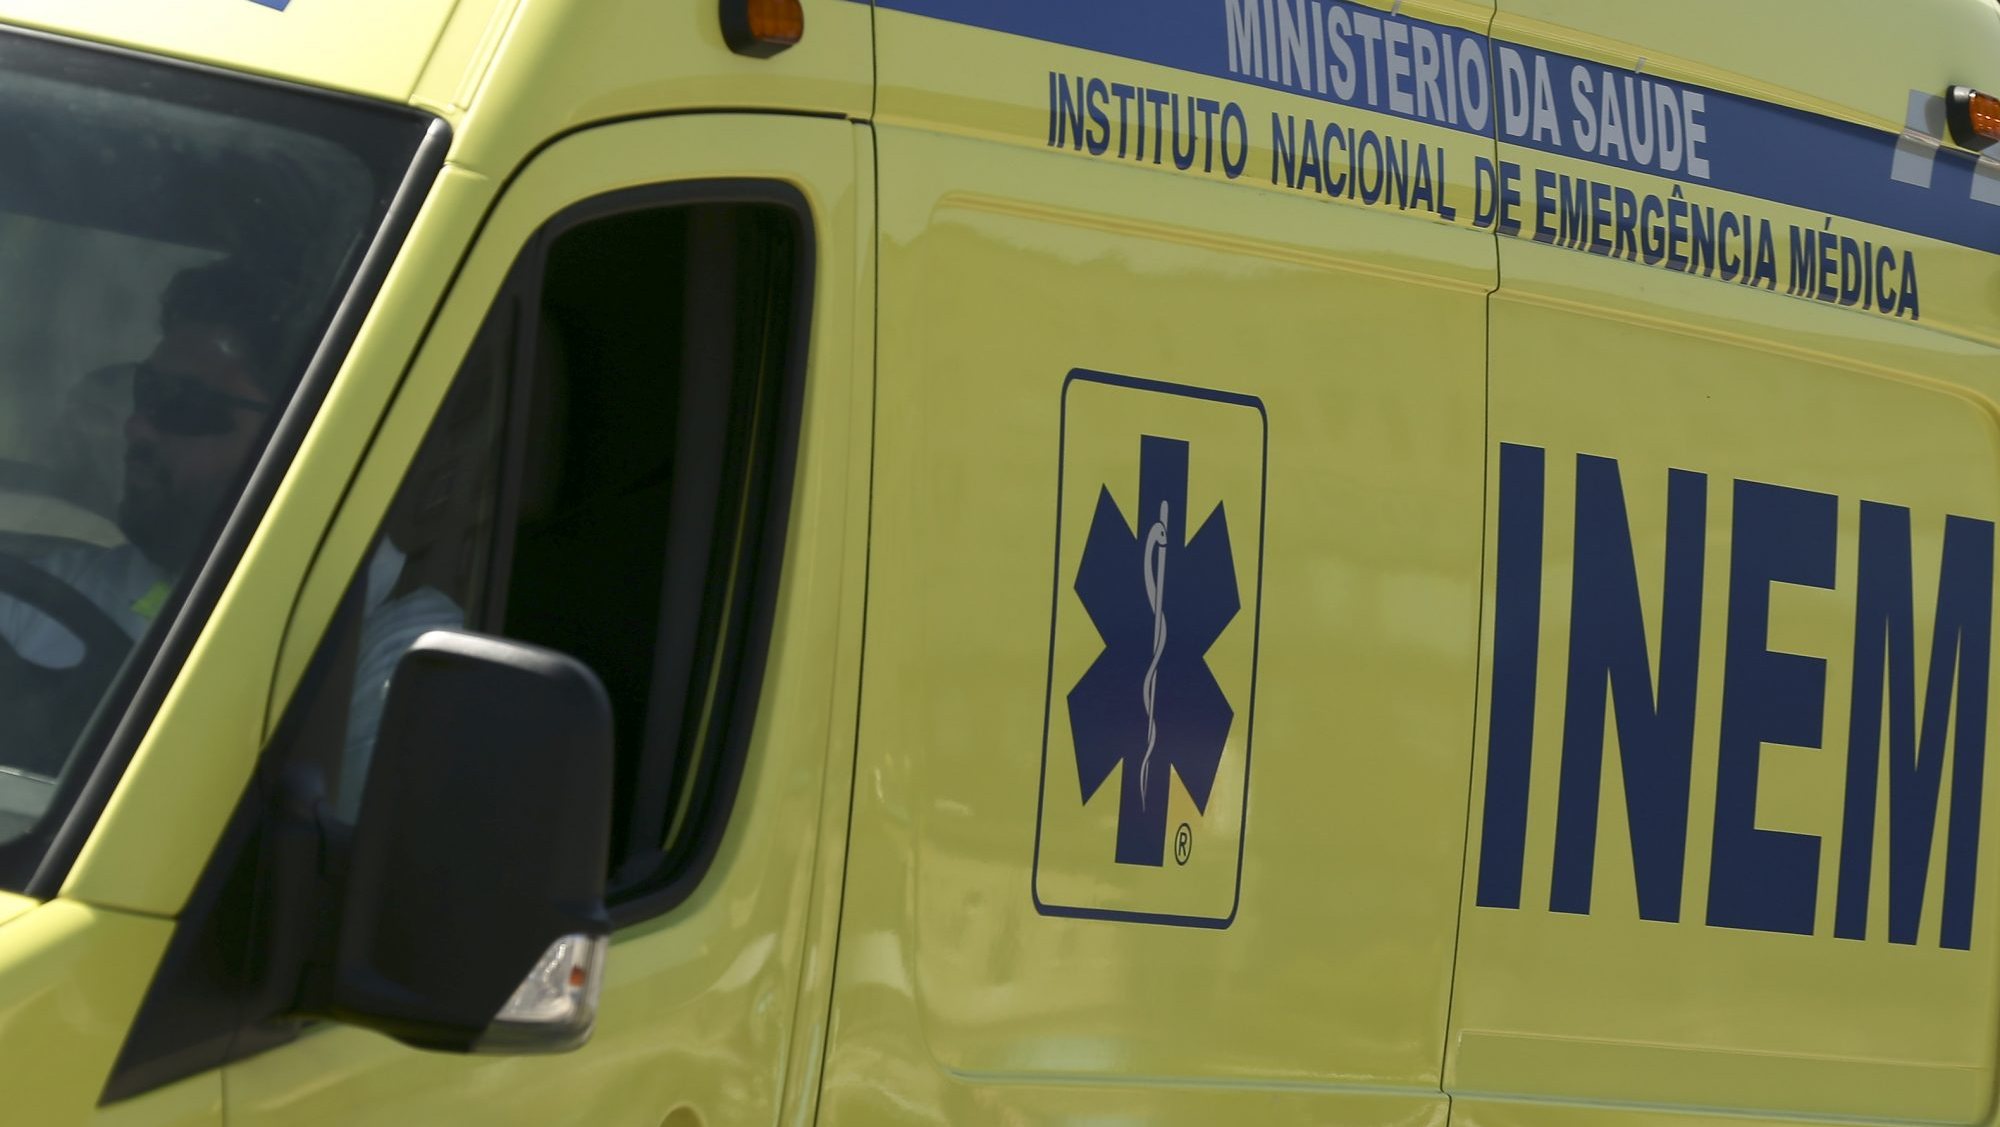 O alerta foi dado pelas 12h40 tendo sido enviada uma ambulância com dois elementos da Associação de Bombeiros Voluntários Famalicenses